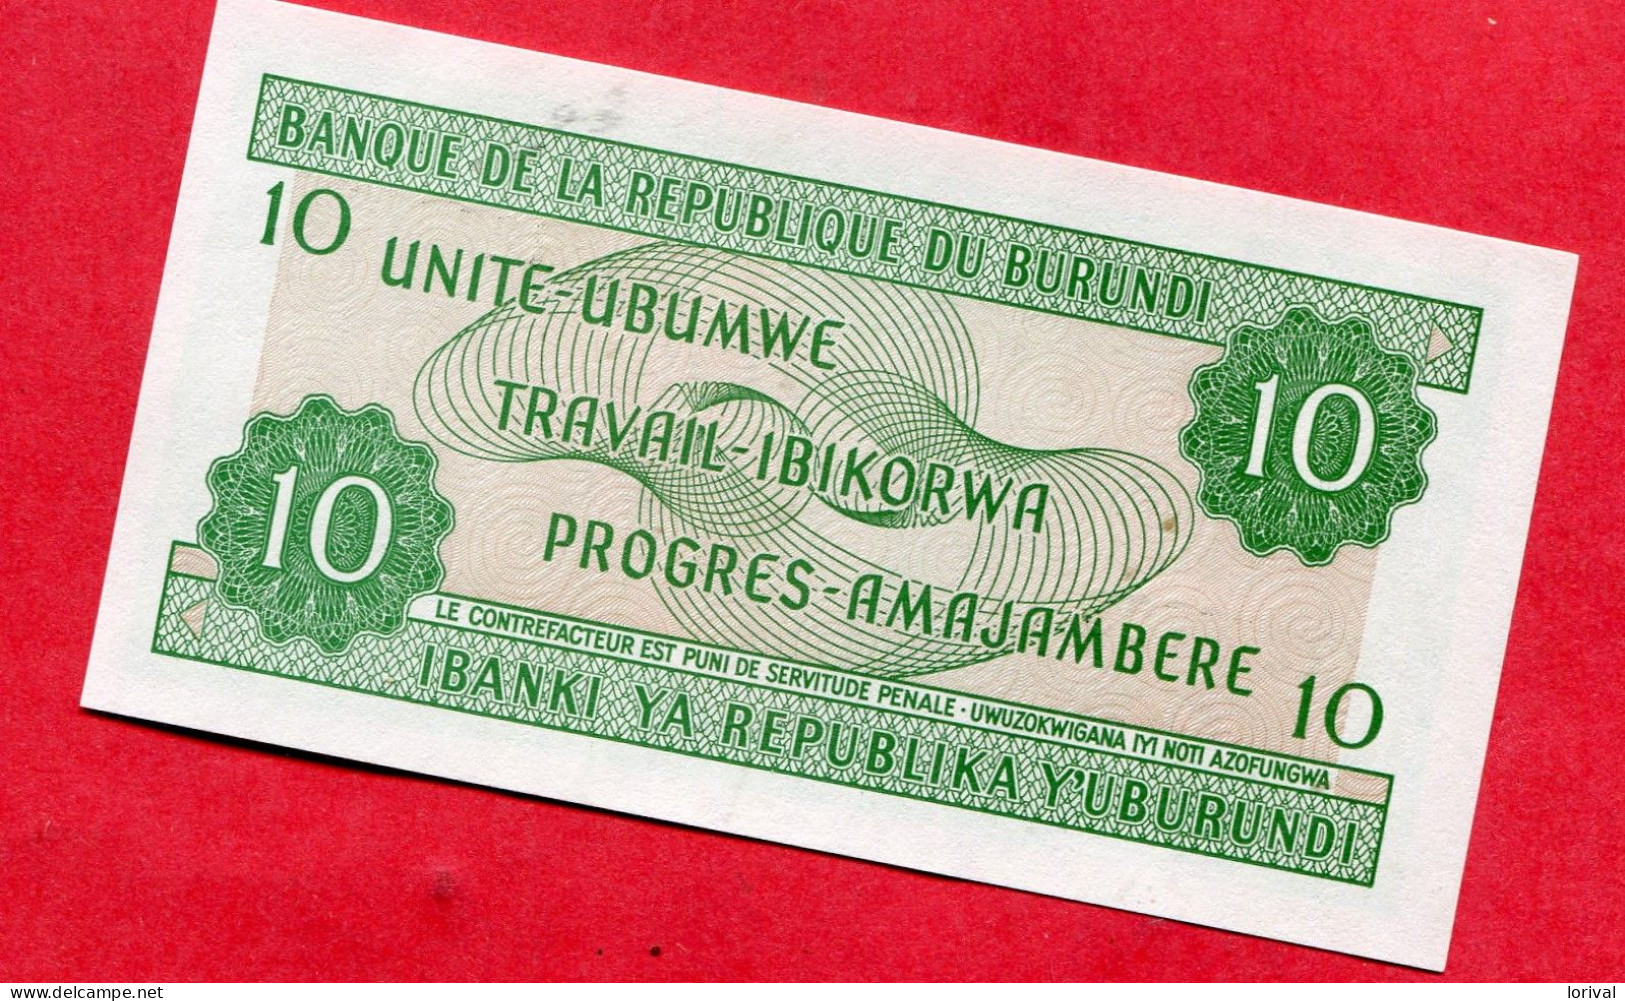 10 Unite Ubumwe Neuf 2 Euros - Burundi